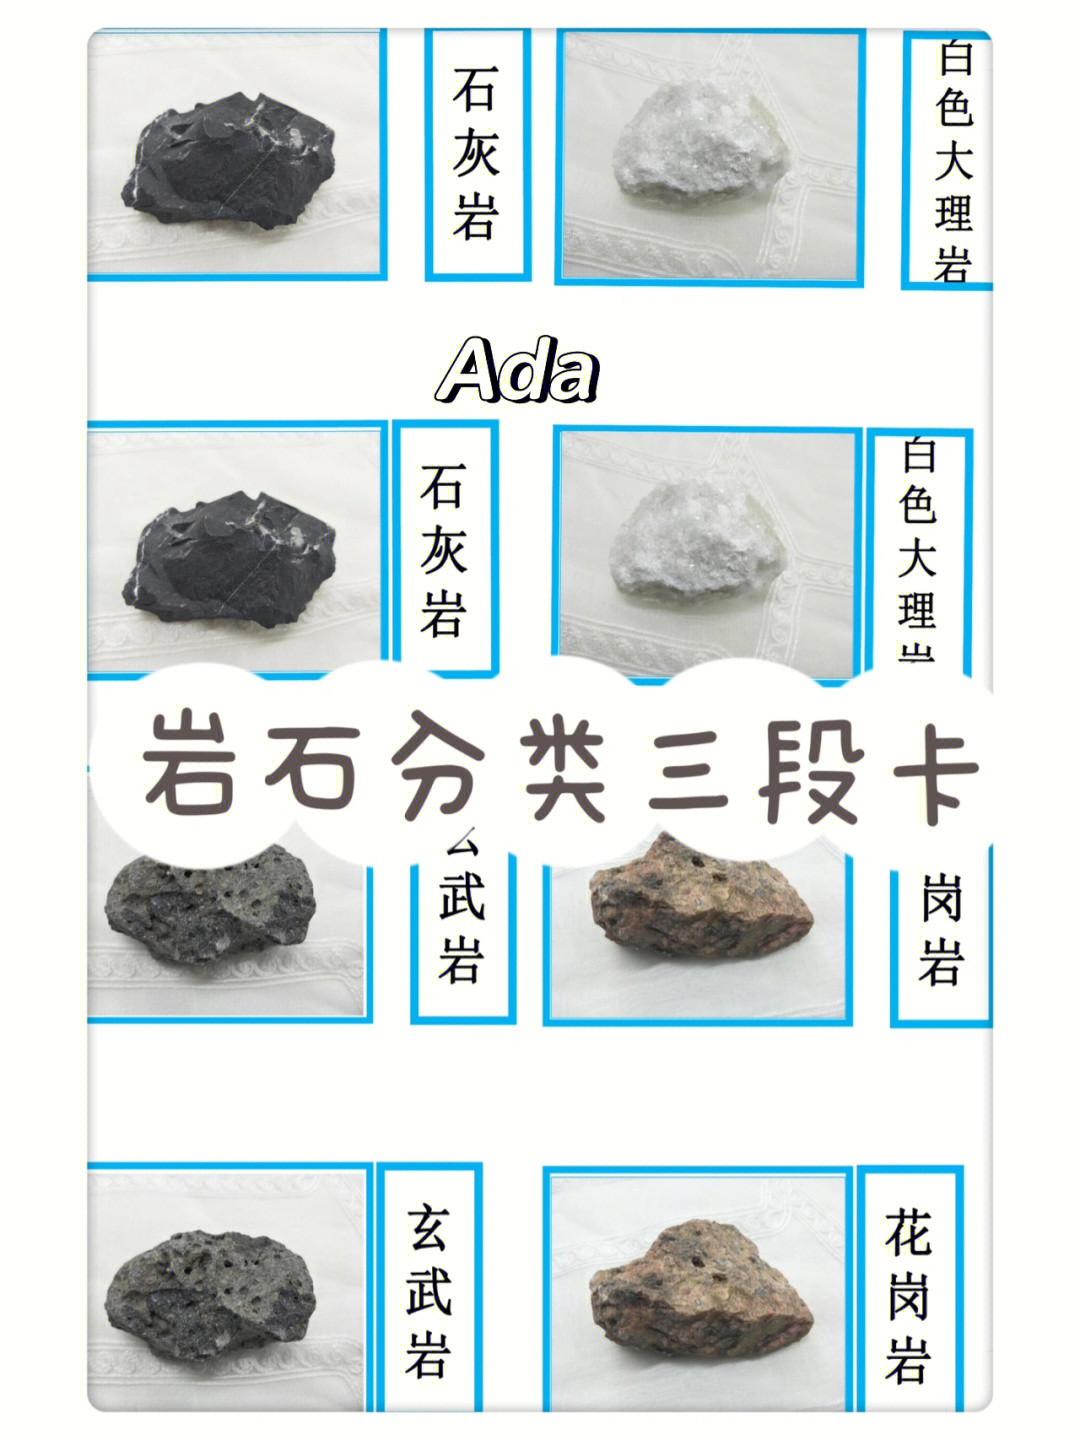 常见的石头种类 名称图片